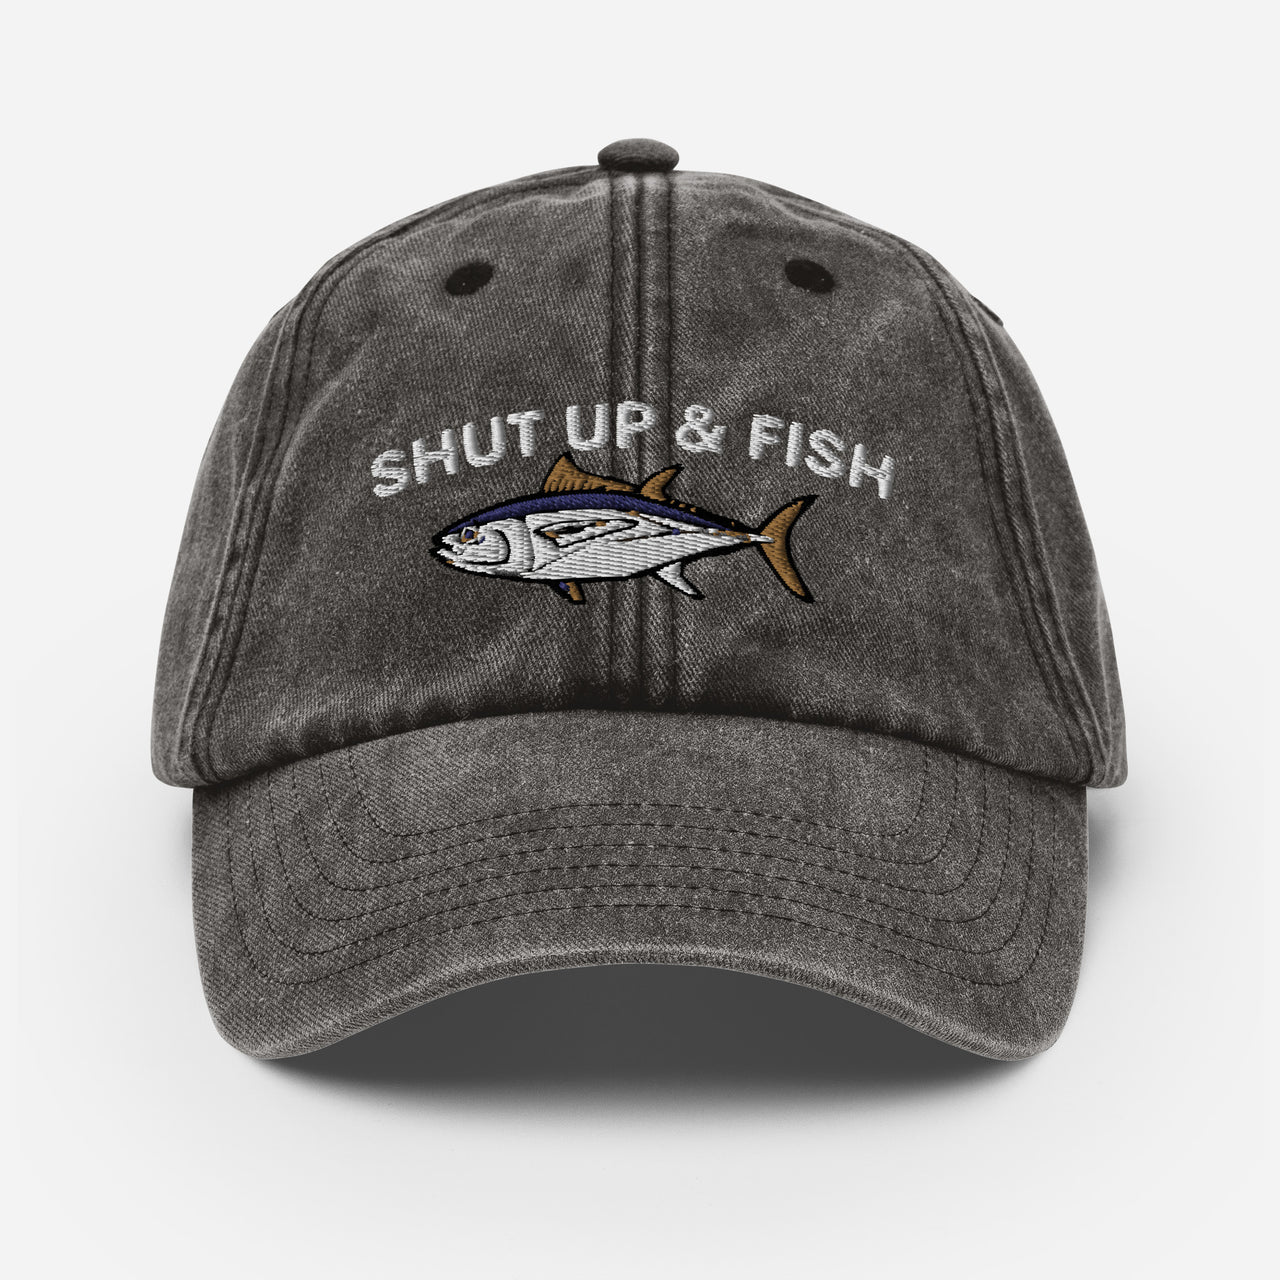 Shut Up and Fish Vintage Hat, Worn Rugged Dad Hat, Fisherman Fishing Gift, Lake Baseball Cap